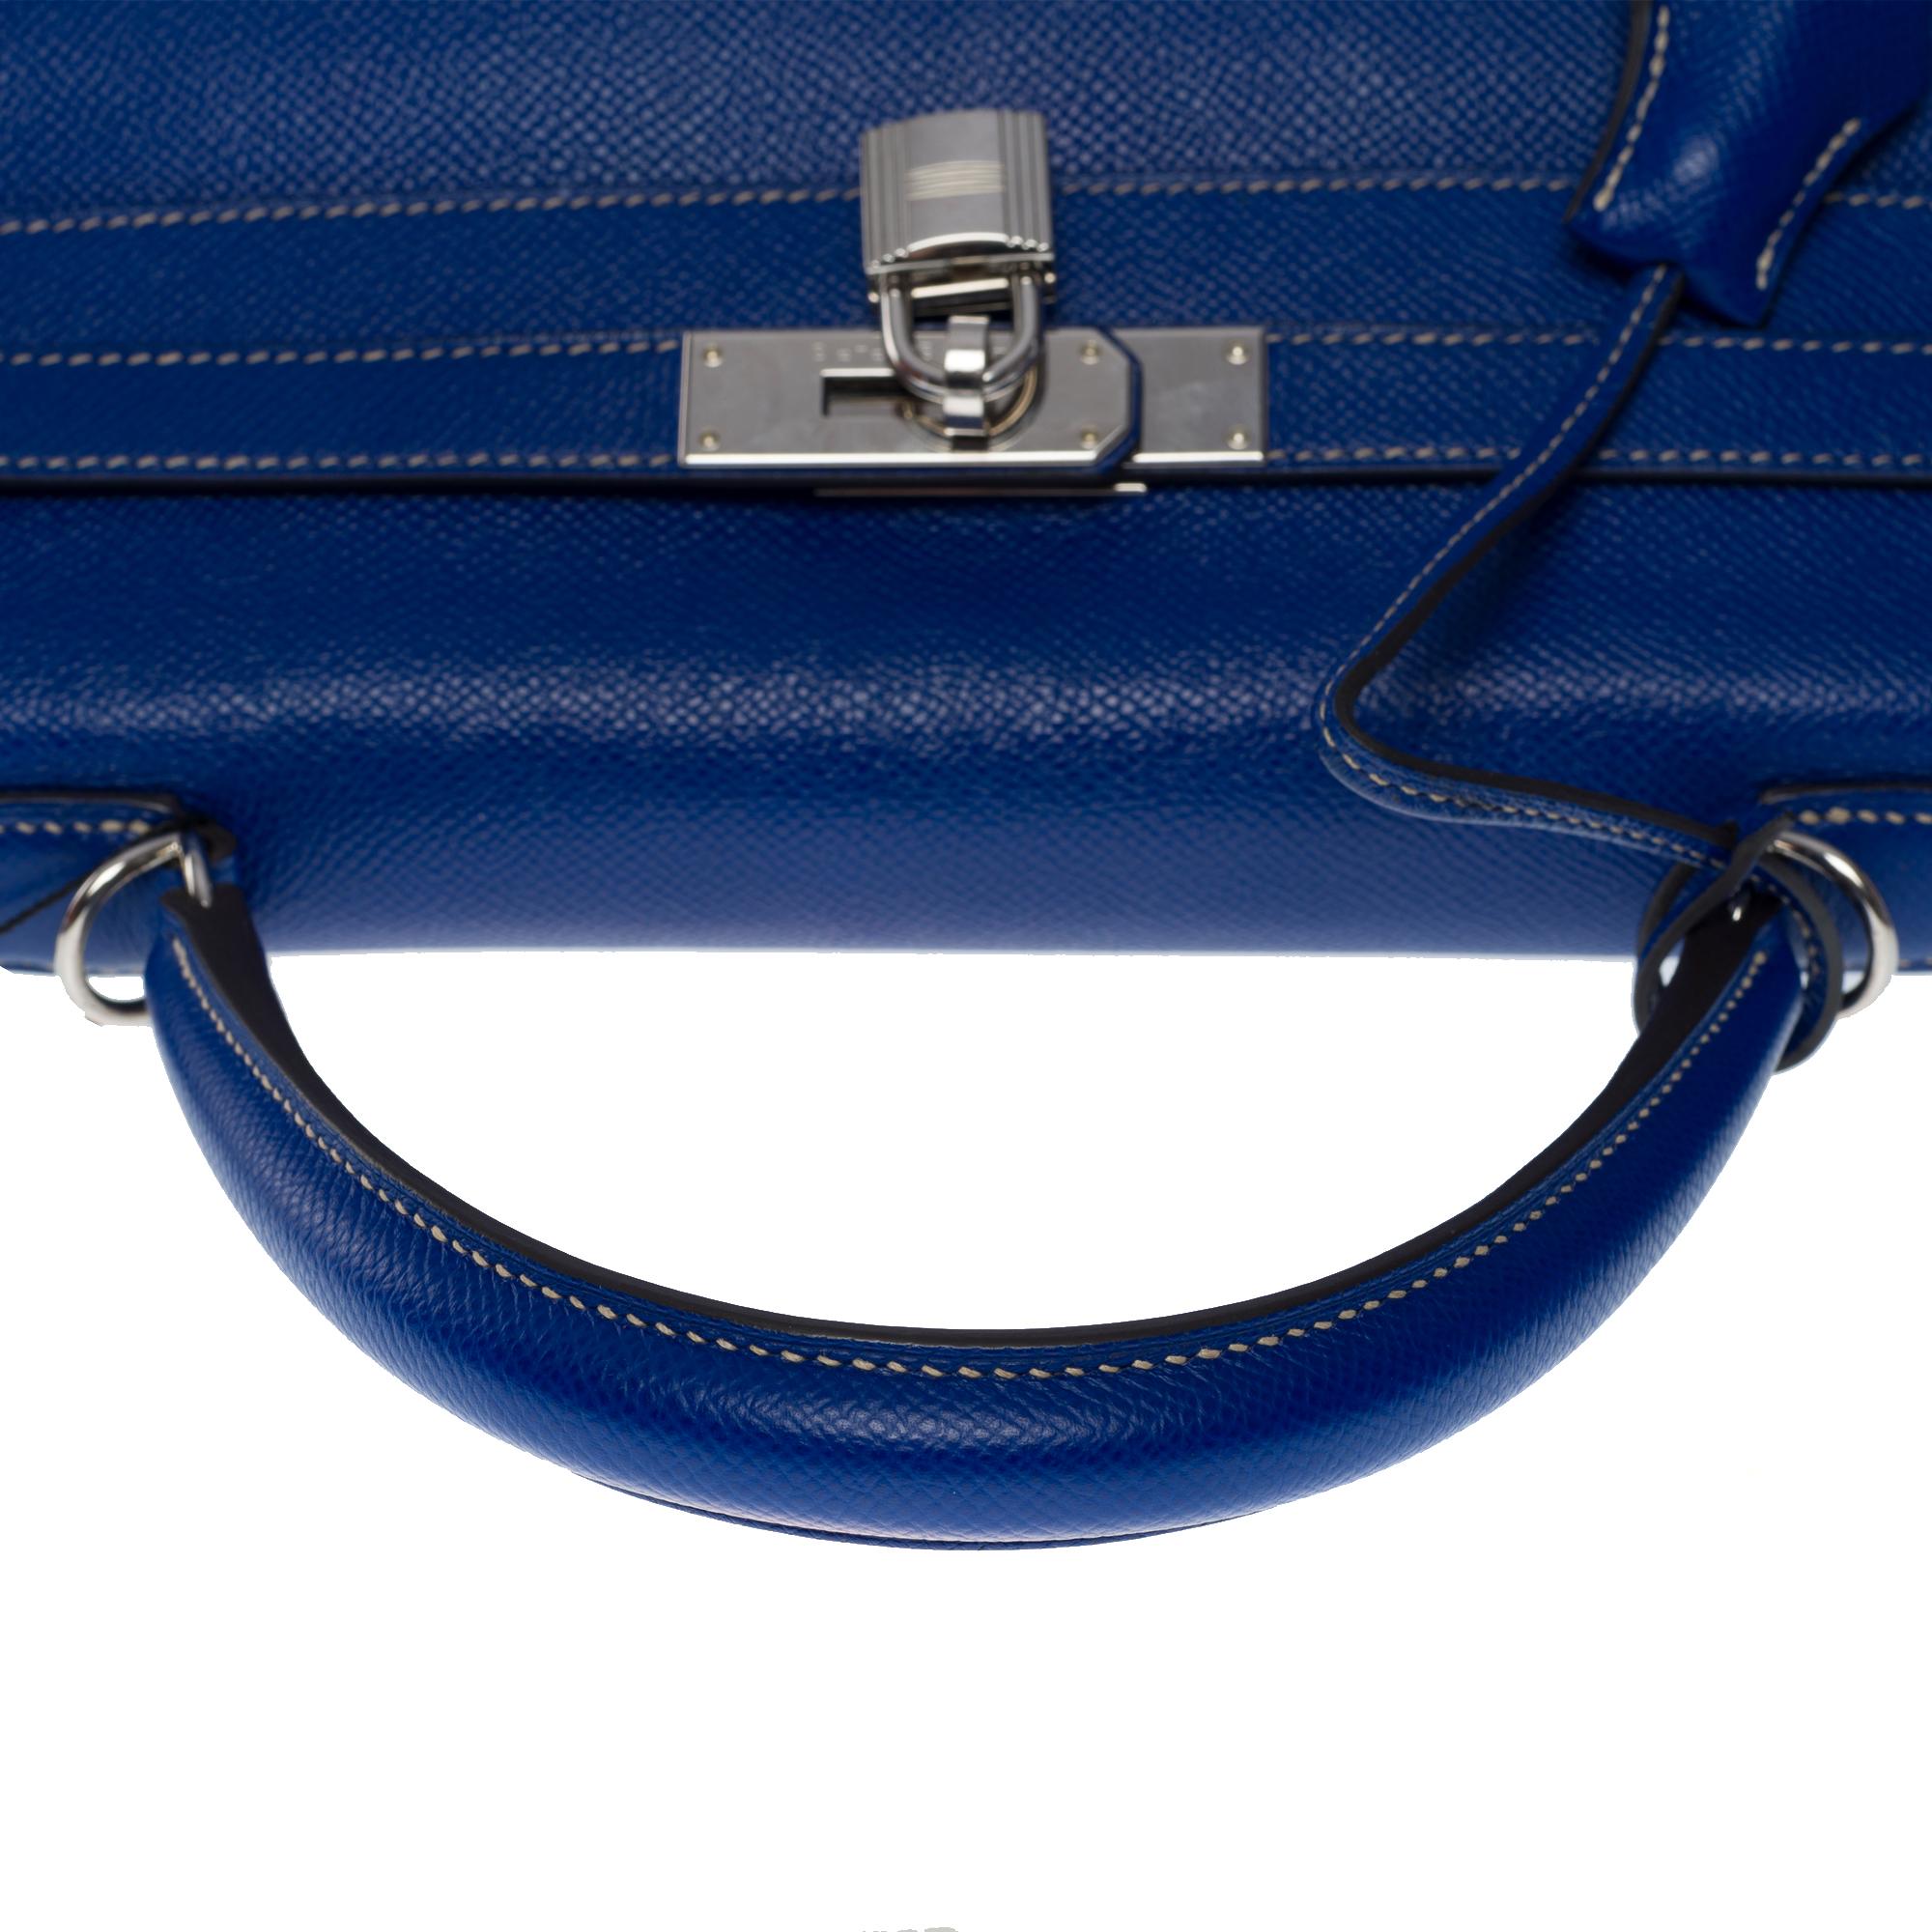 Candy Edition Hermès Kelly 35 retourne handbag strap in Blue Epsom leather, SHW 5